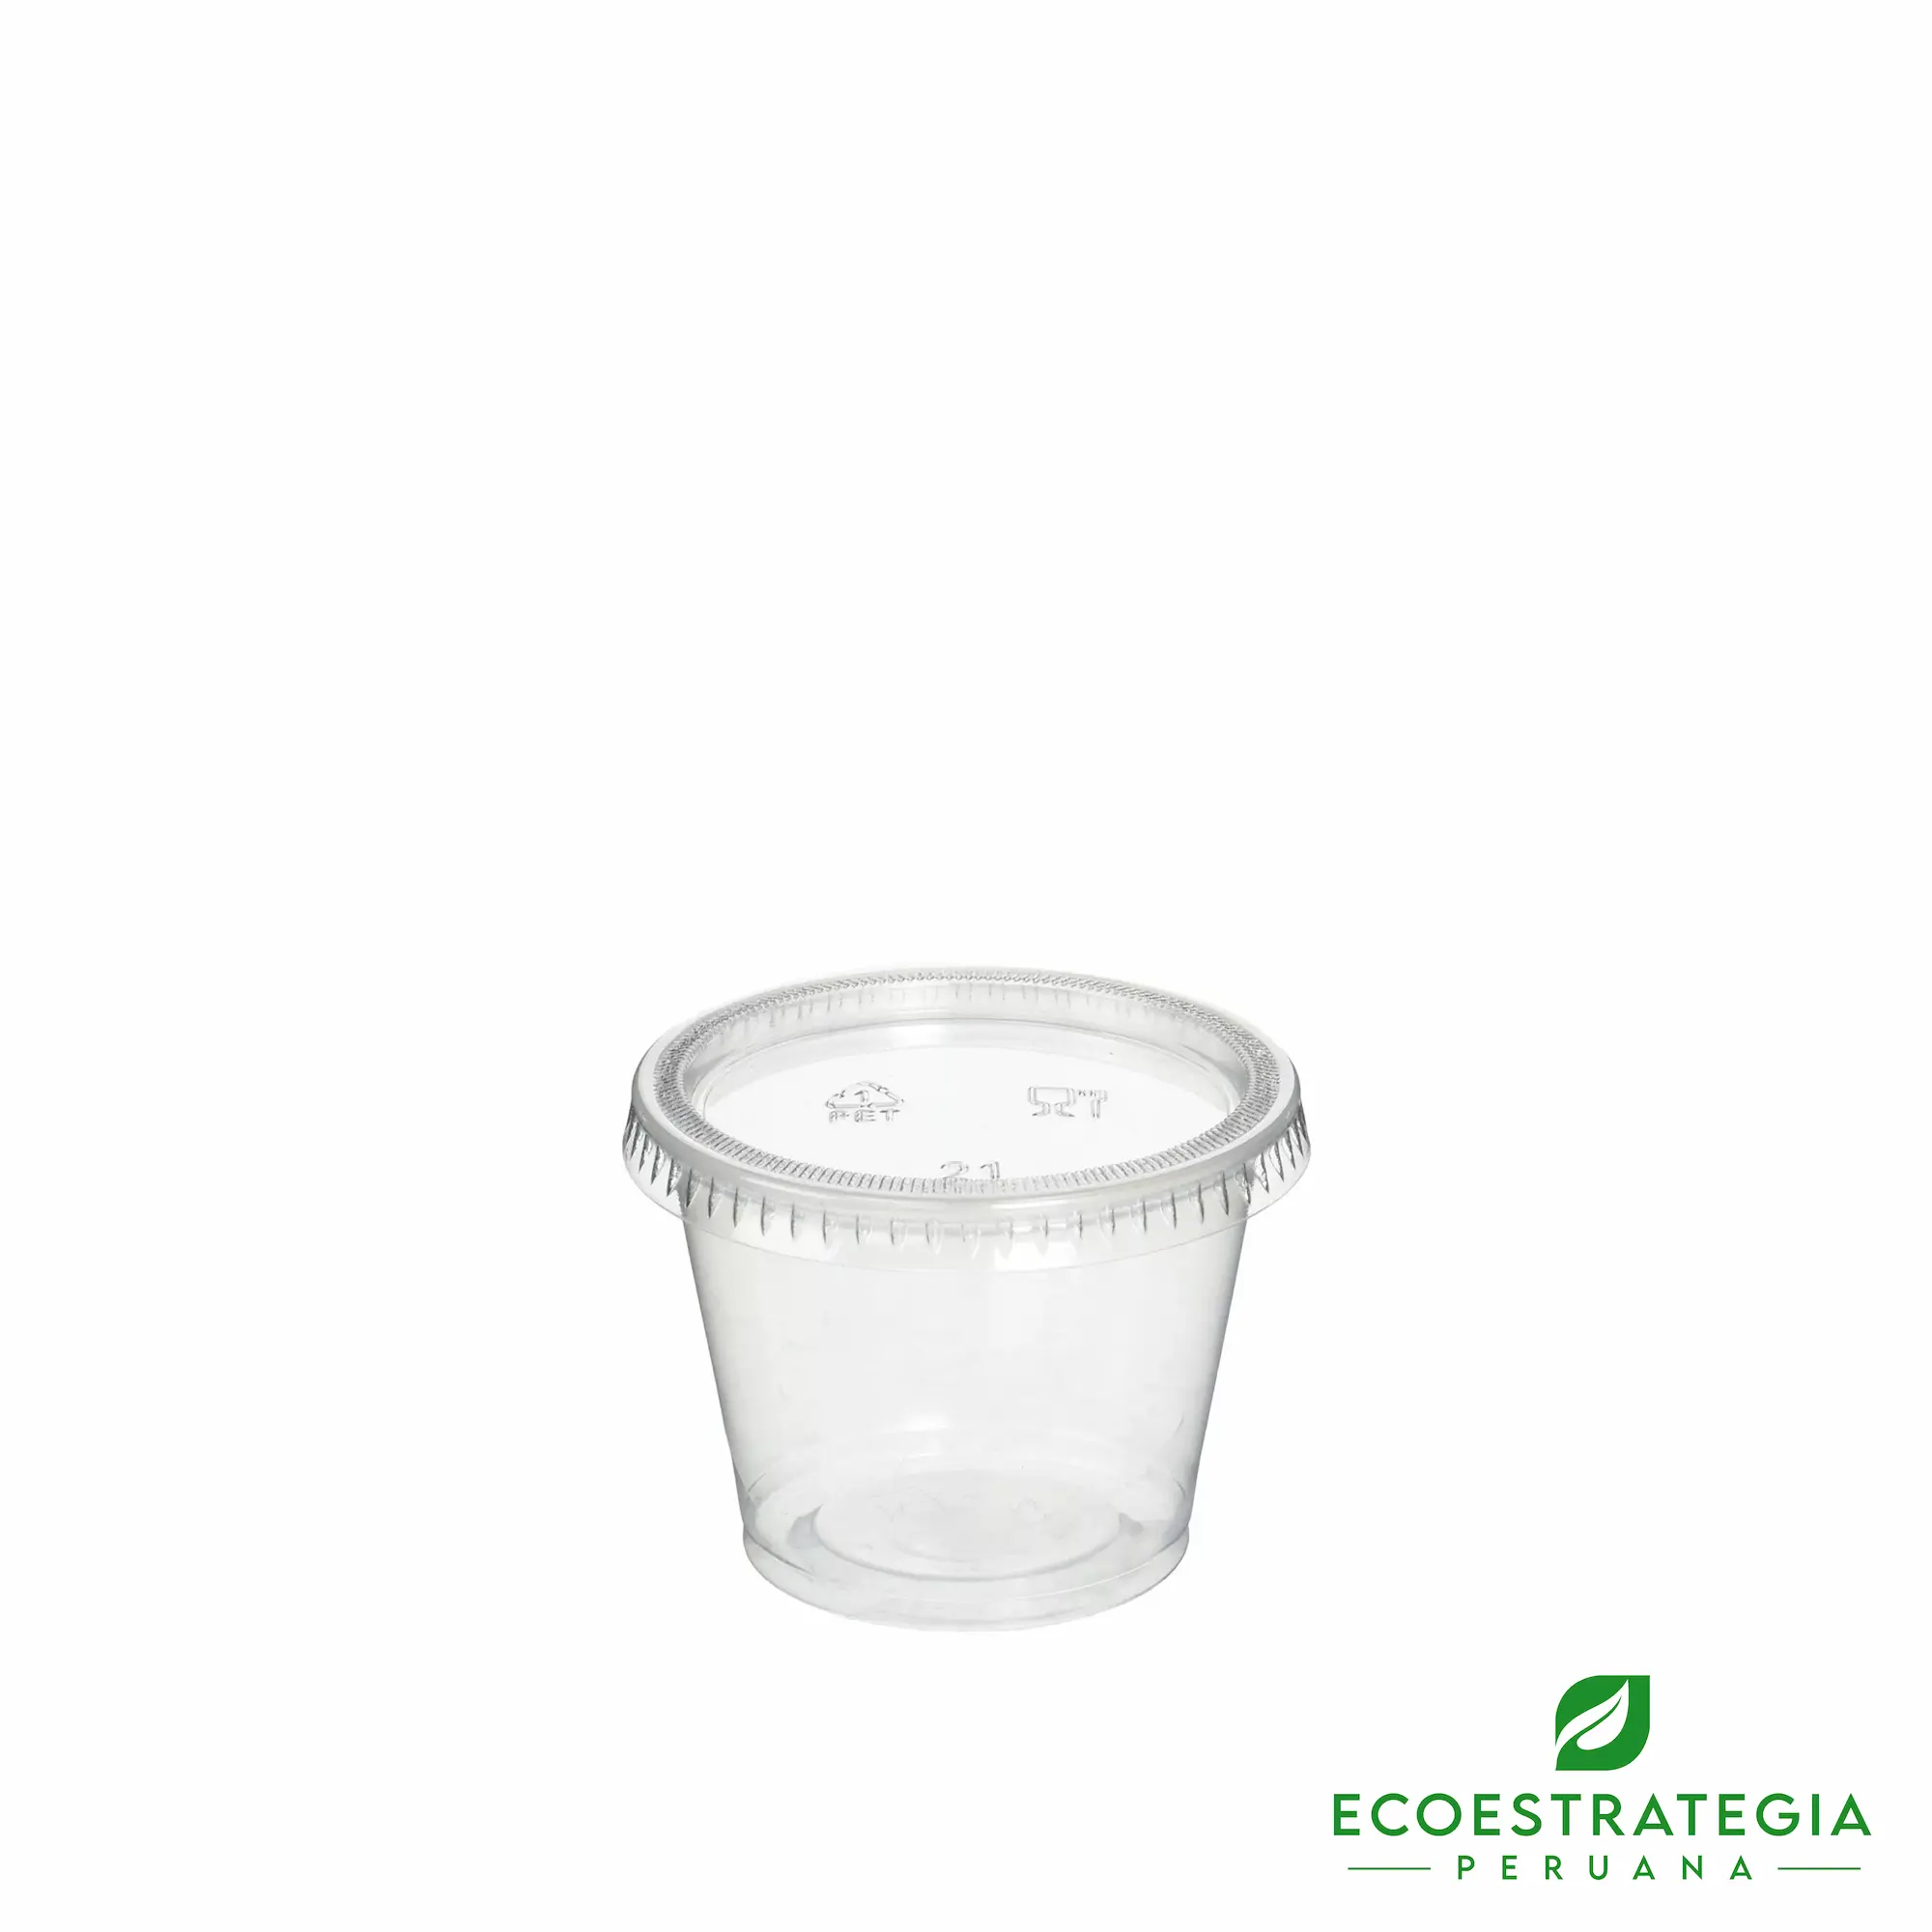 Este envase para cremas de 4oz, es un producto de material descartable hecho a base de plástico virgen. Cotiza tus ajiceros, salseros y pirotines biodegradables